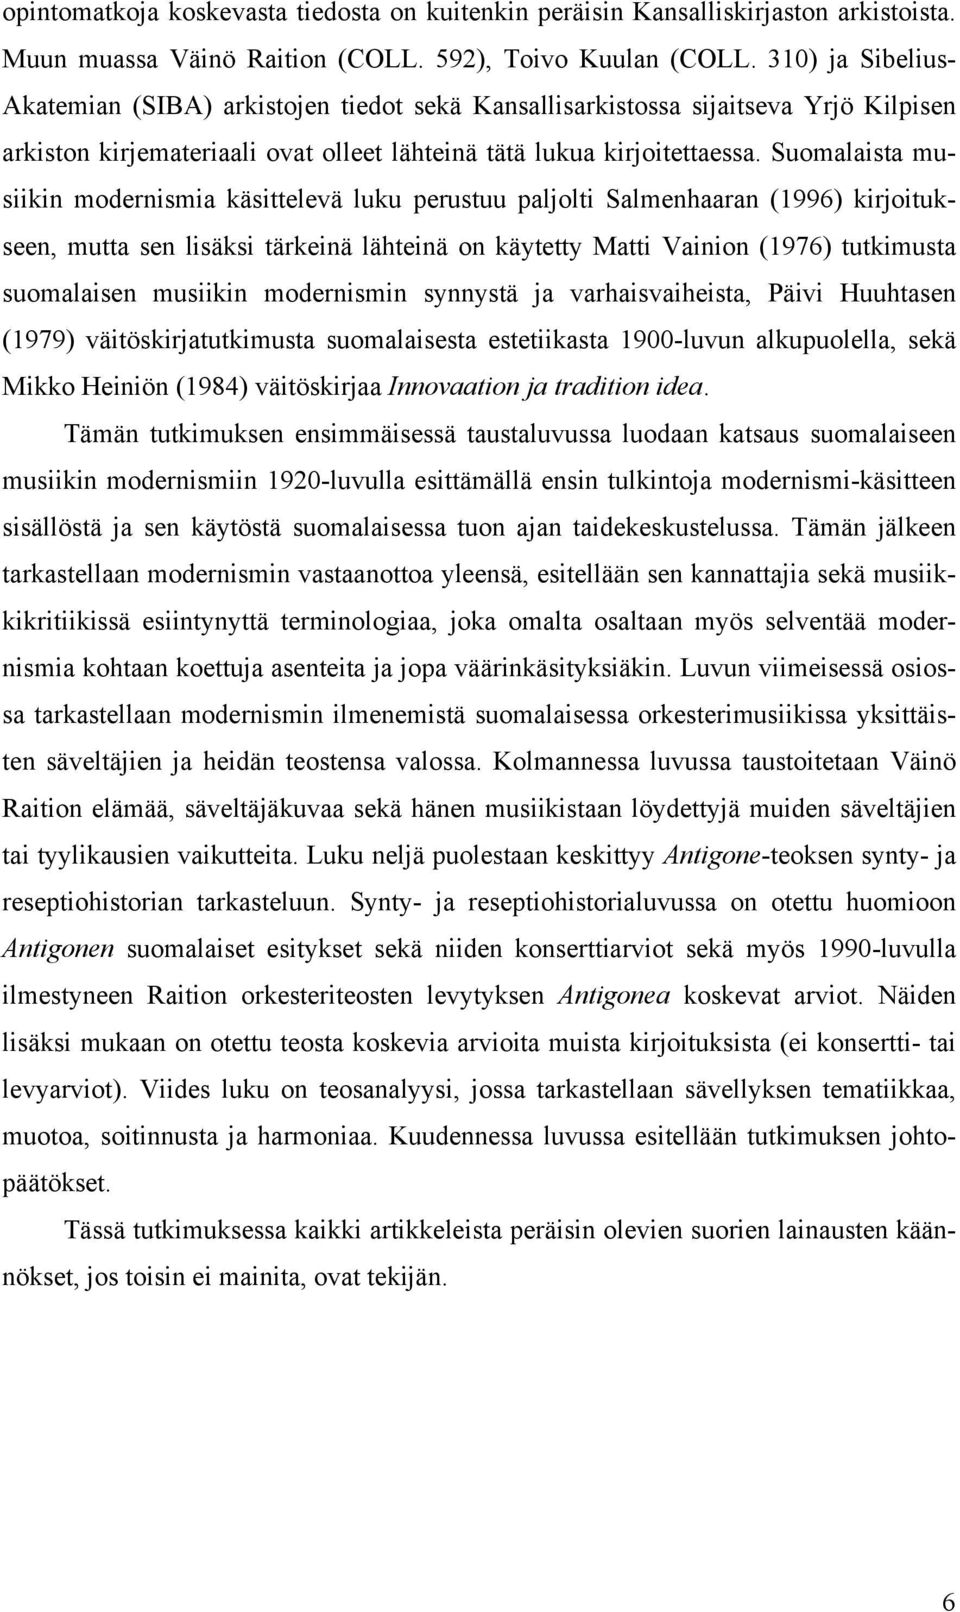 Suomalaista musiikin modernismia käsittelevä luku perustuu paljolti Salmenhaaran (1996) kirjoitukseen, mutta sen lisäksi tärkeinä lähteinä on käytetty Matti Vainion (1976) tutkimusta suomalaisen